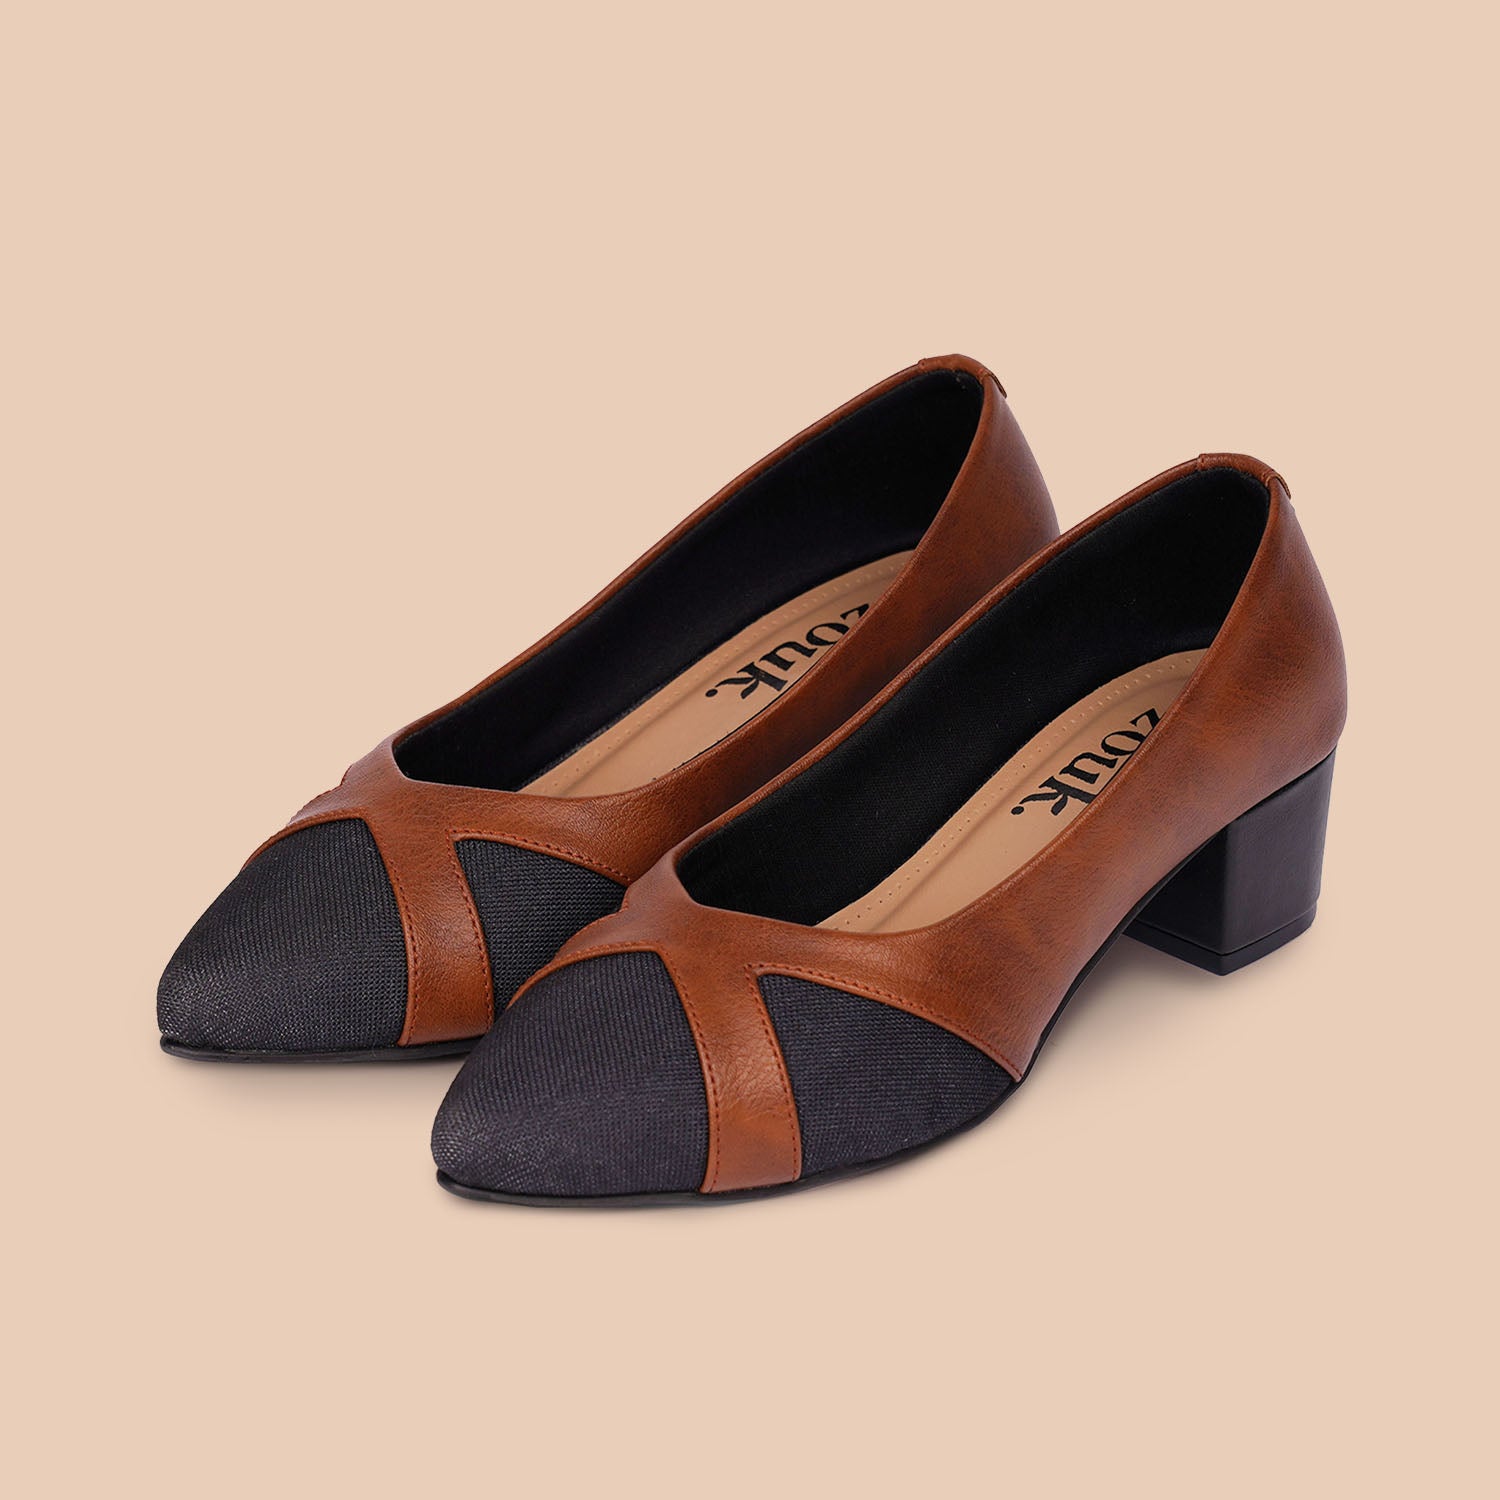 Badgley Mischka Black formal heels | Formal heels, Badgley mischka shoes,  Shoes women heels